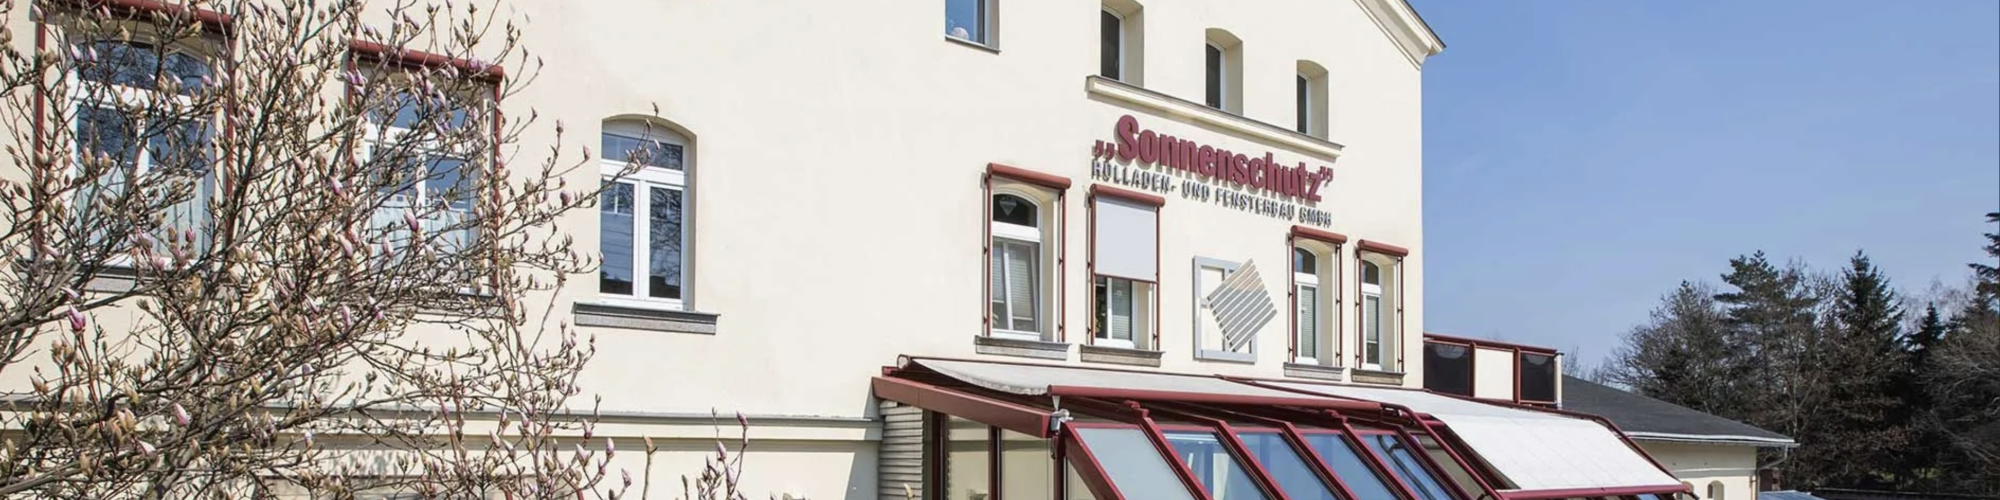 "Sonnenschutz" Rolladen- und Fensterbau GmbH